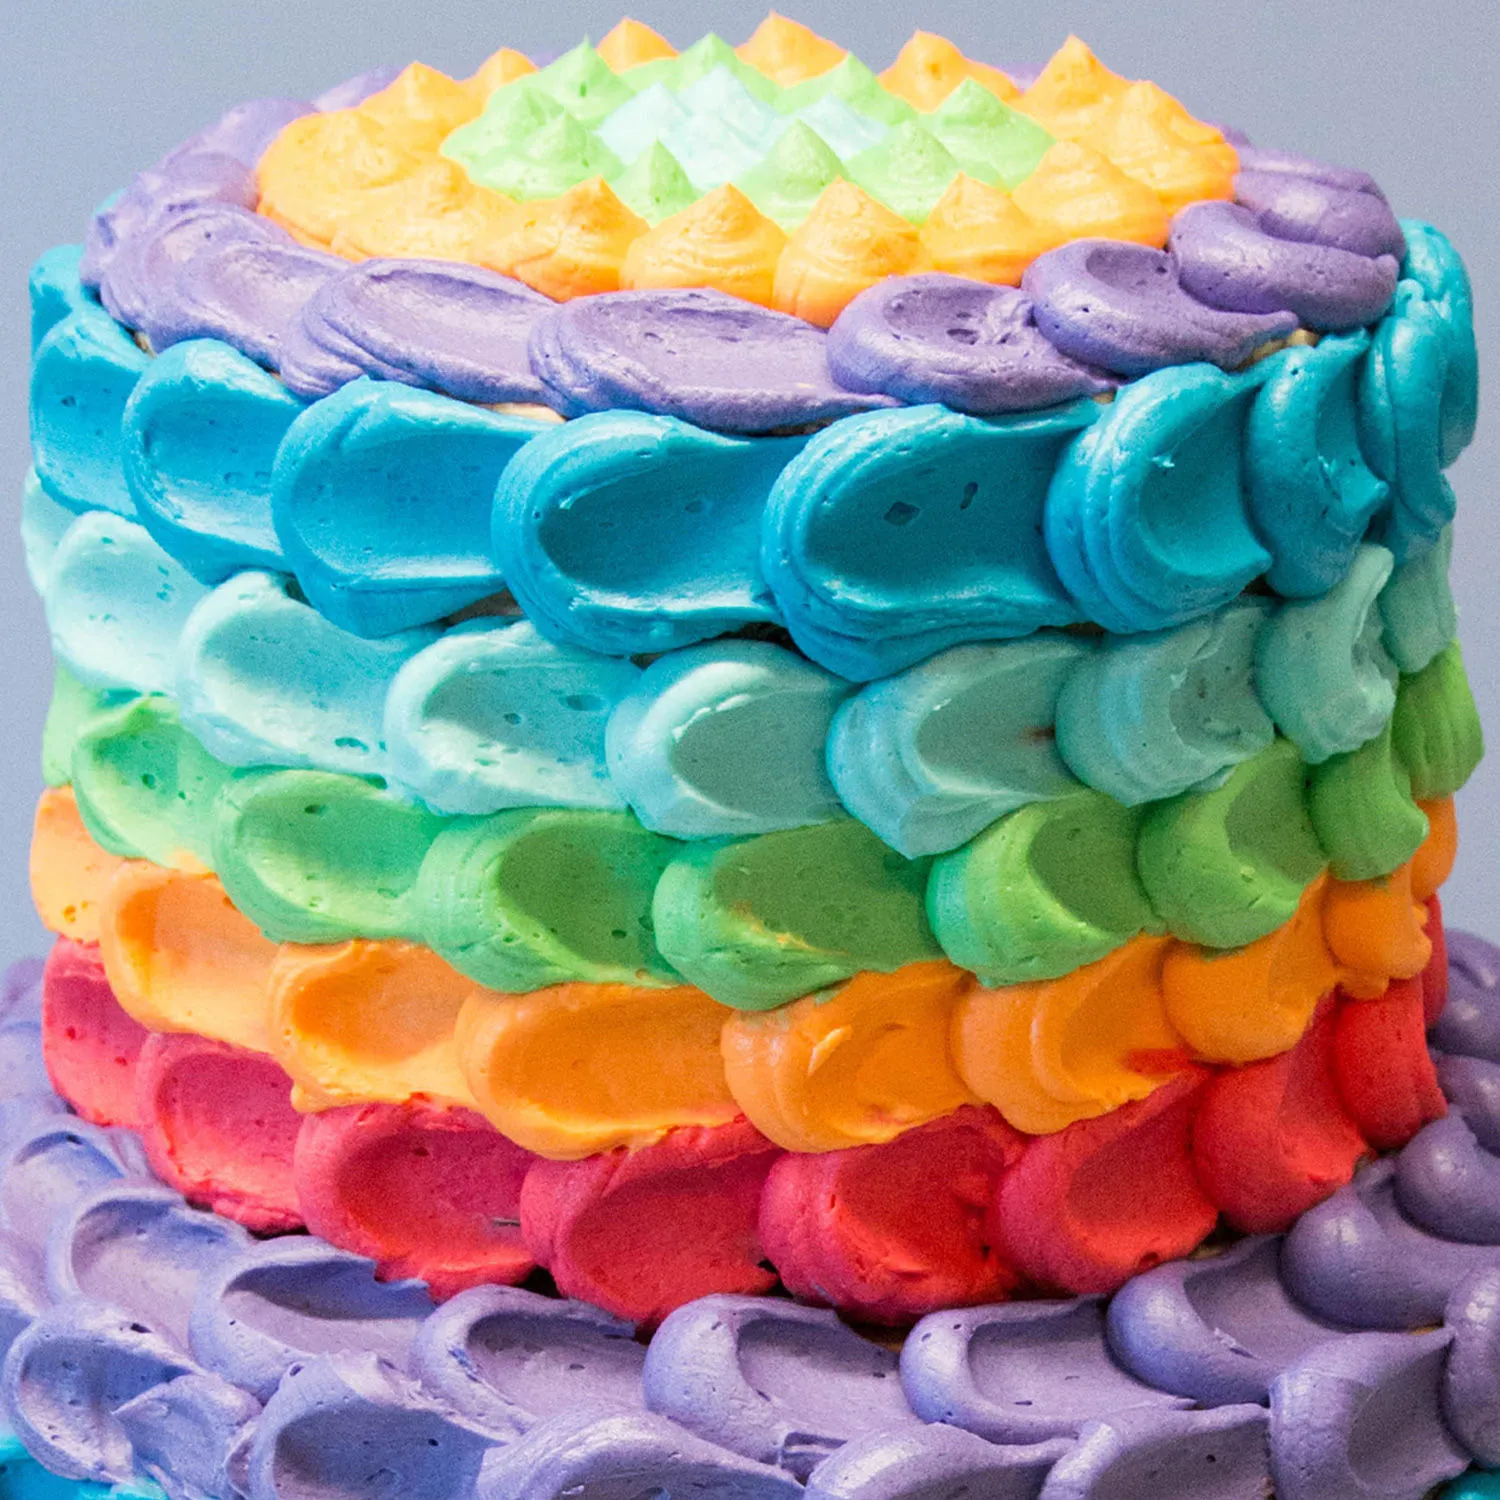 Buy/Send Magical Rainbow Cake Online - Rose N Petal